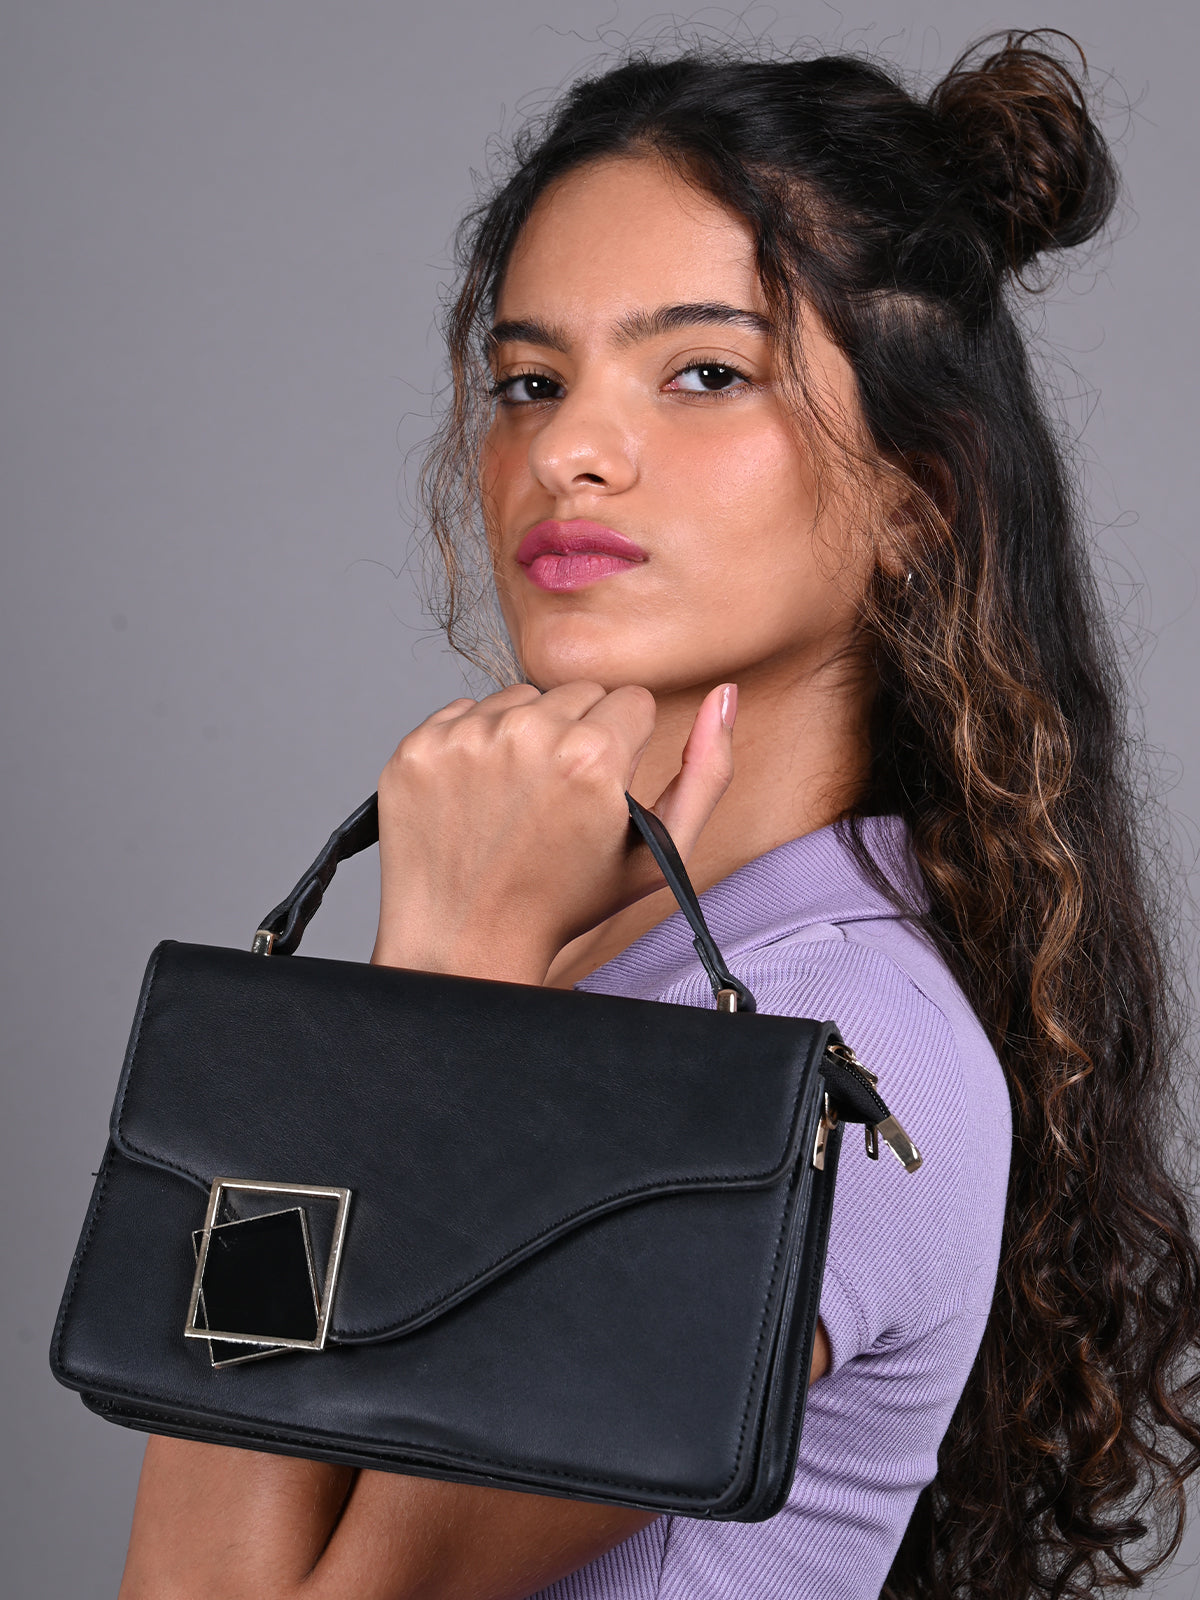 Odette Black Patterned Clutch Bag For Women